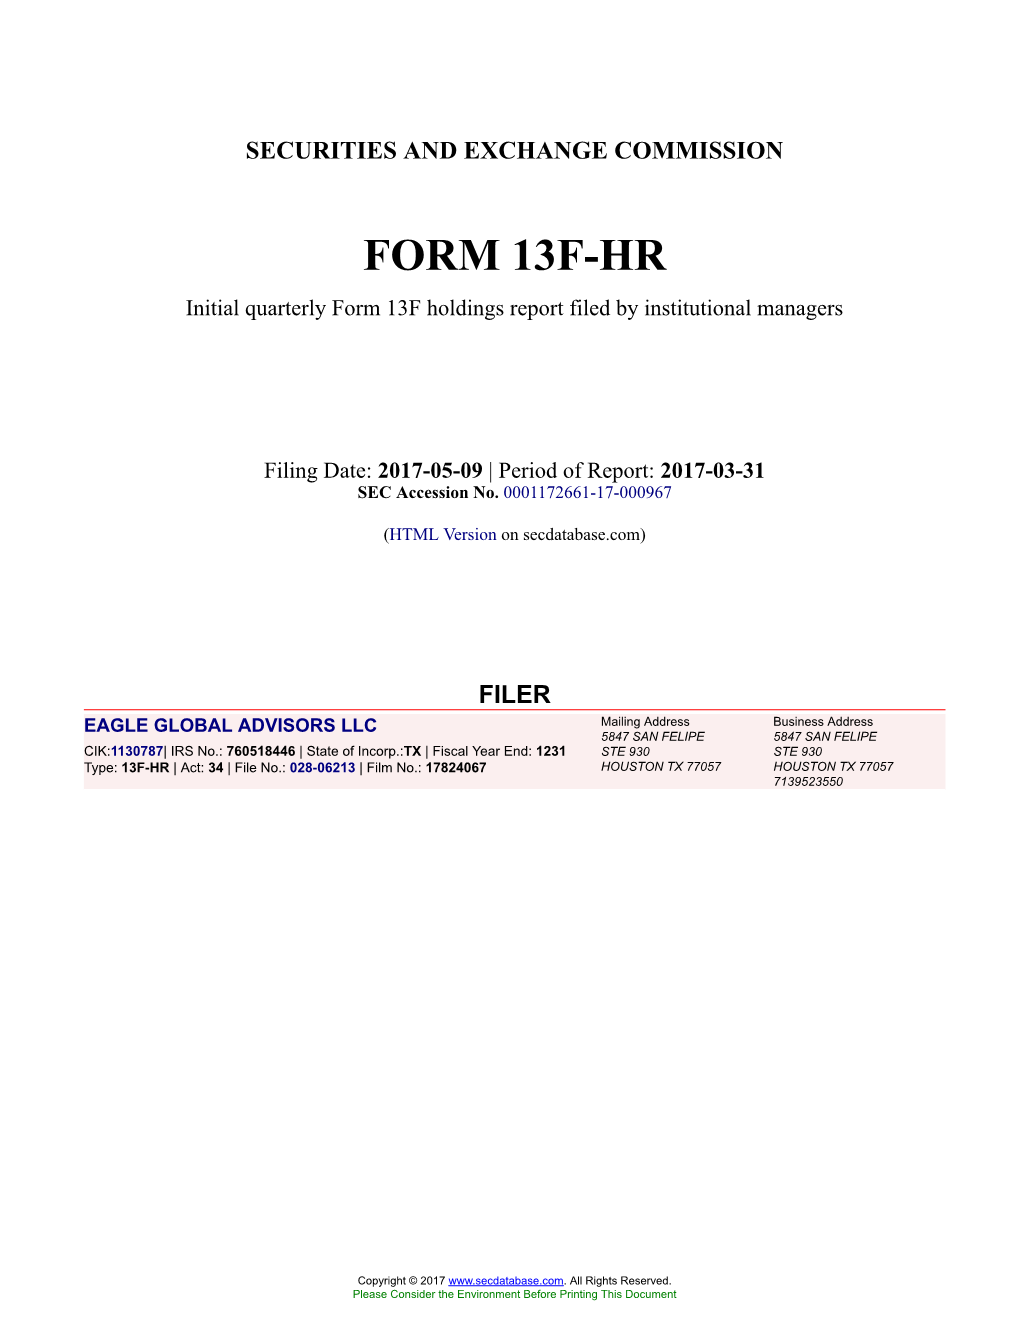 EAGLE GLOBAL ADVISORS LLC Form 13F-HR